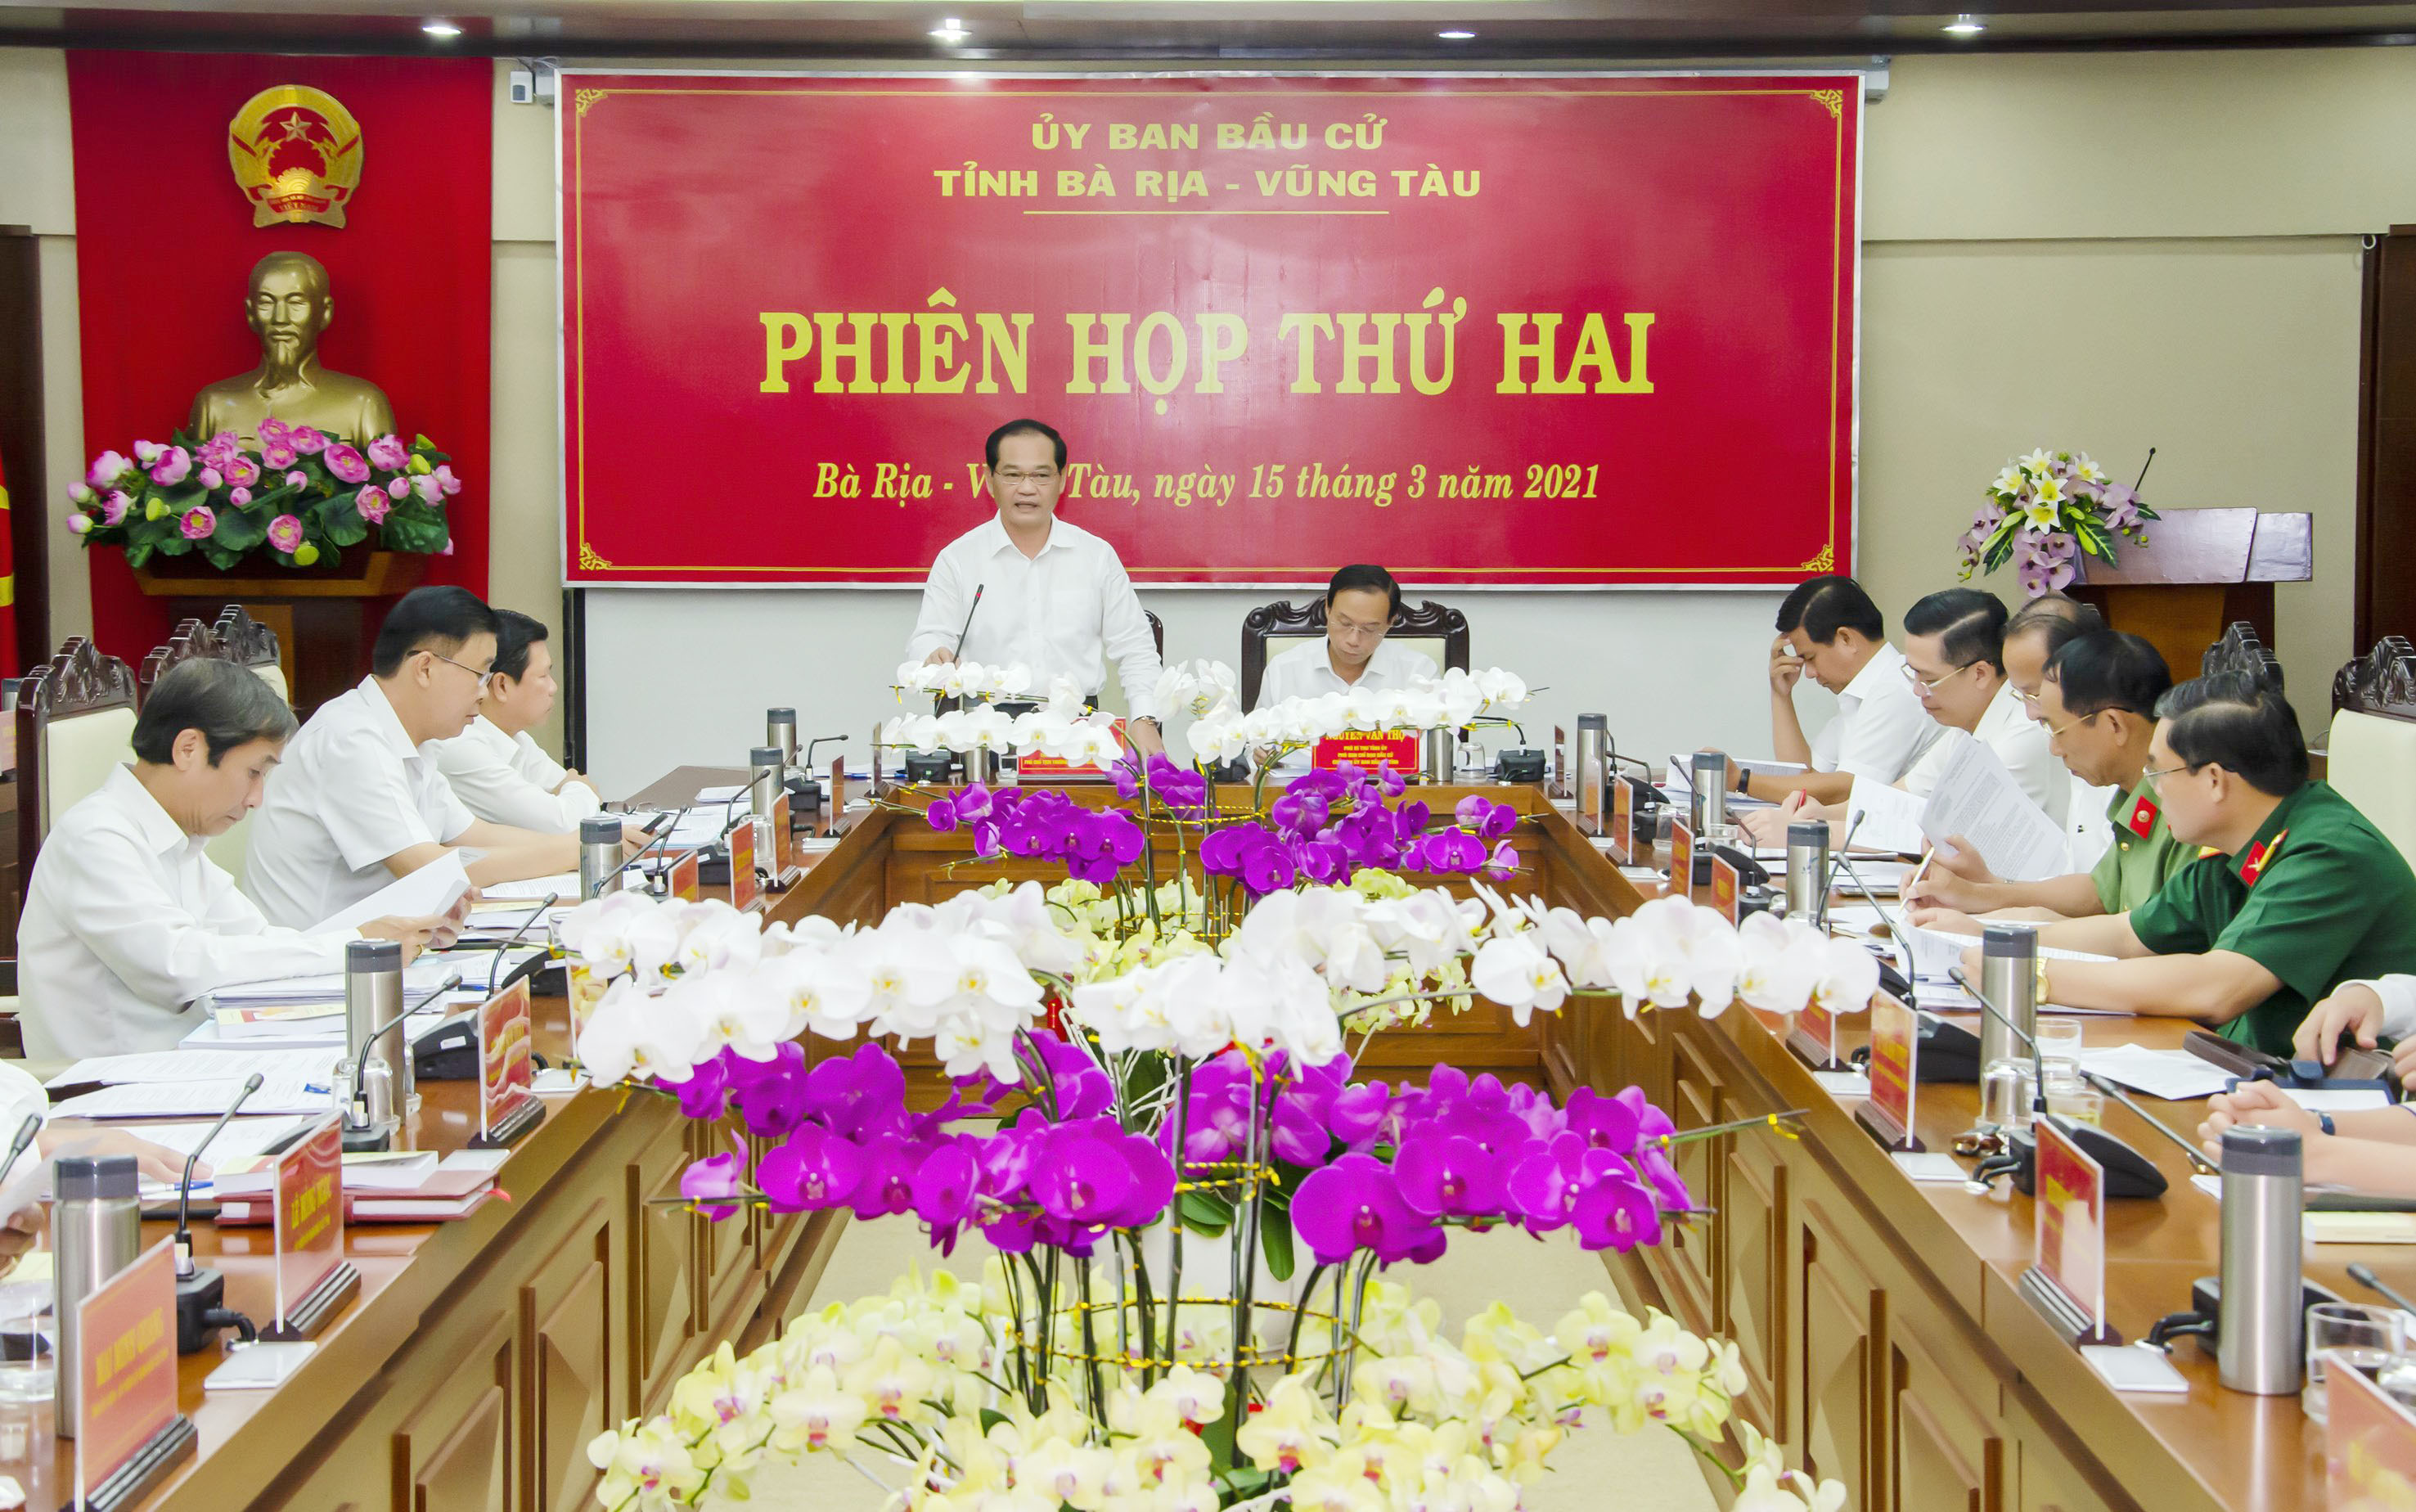 Ông Mai Ngọc Thuận, Phó Chủ tịch HĐND tỉnh, Phó Trưởng Ban Thường trực Ủy ban bầu cử tỉnh nhấn mạnh các nhiệm vụ trọng tâm mà các đơn vị phải chủ động thực hiện trong thời gian tới tại Phiên họp thứ hai, Ủy ban bầu cử tỉnh. 